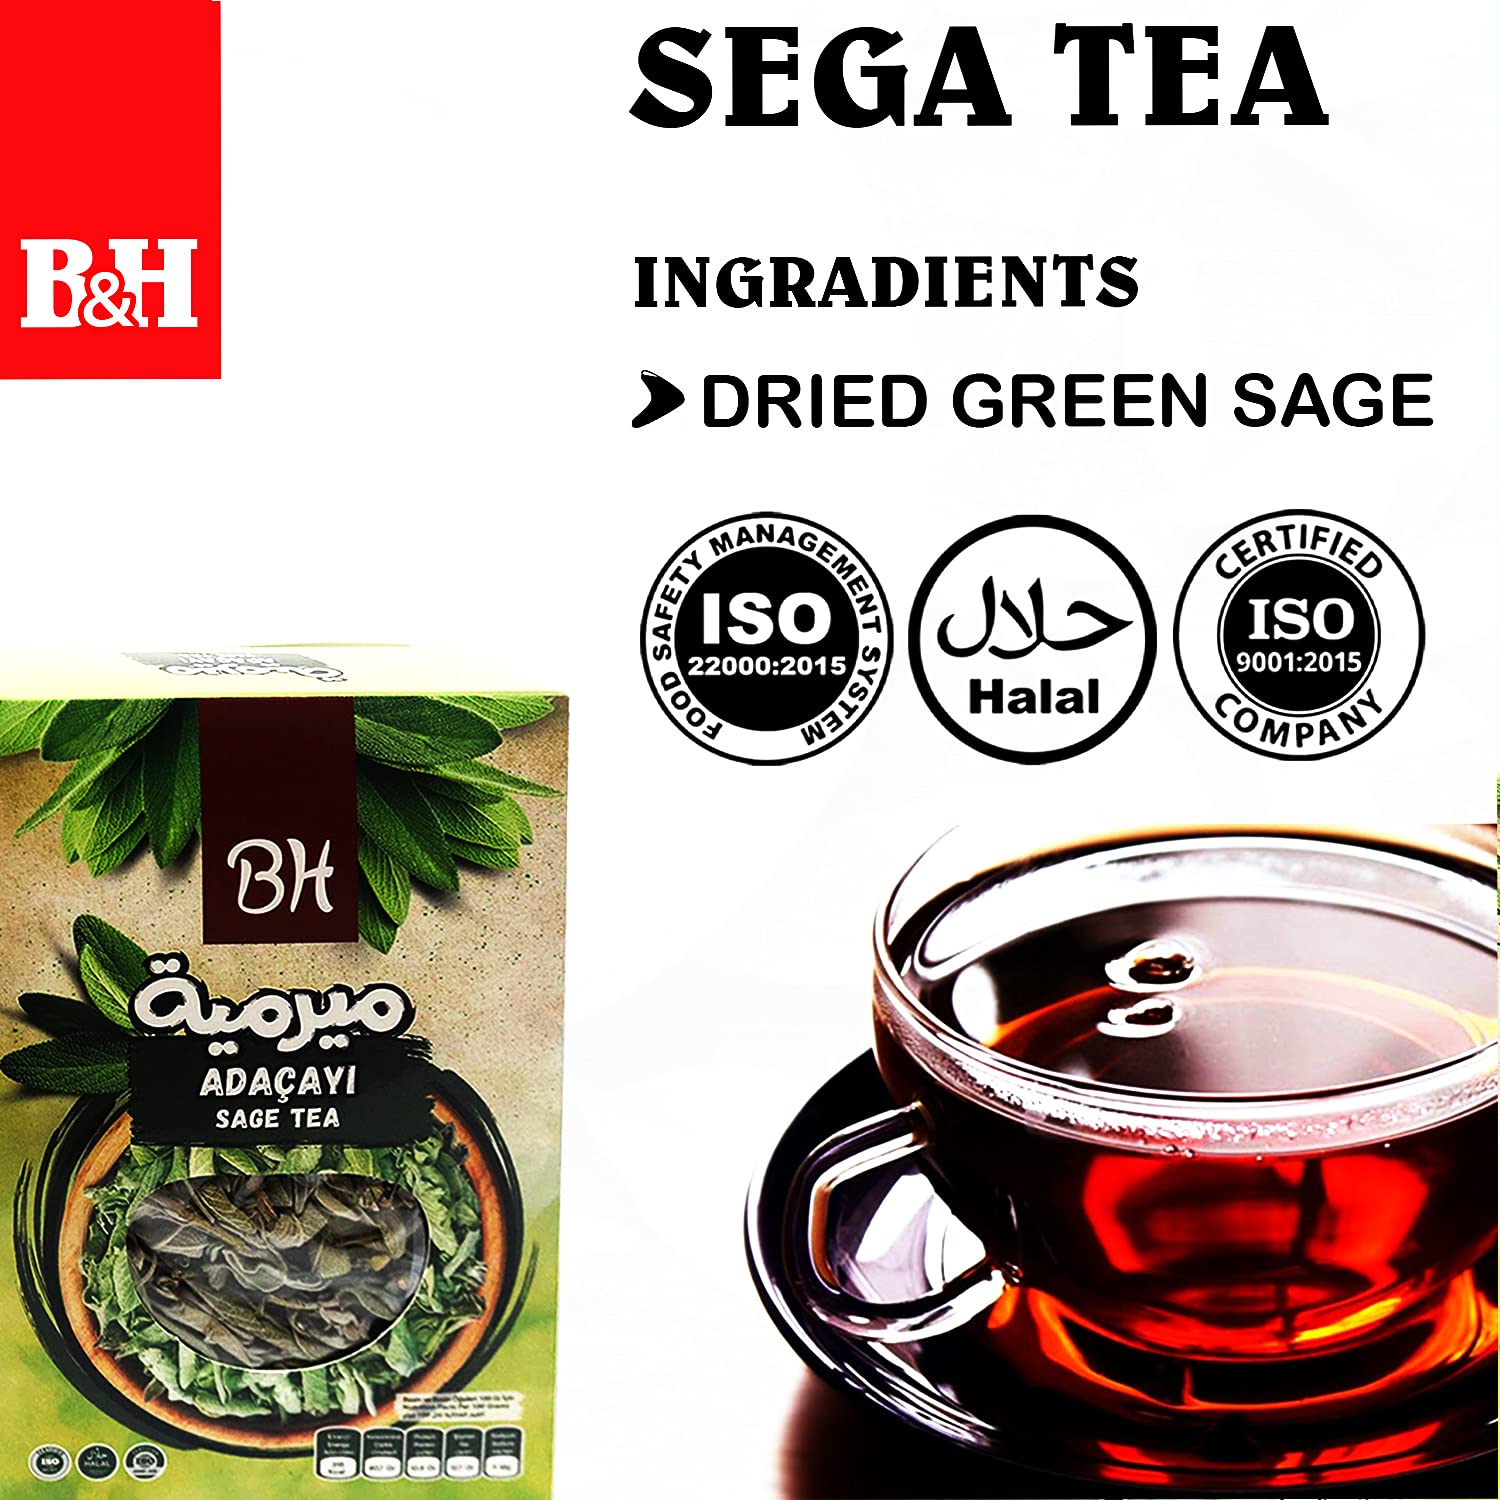 Best Harvest Spices Sage Tea Ground Organic Sage 50g